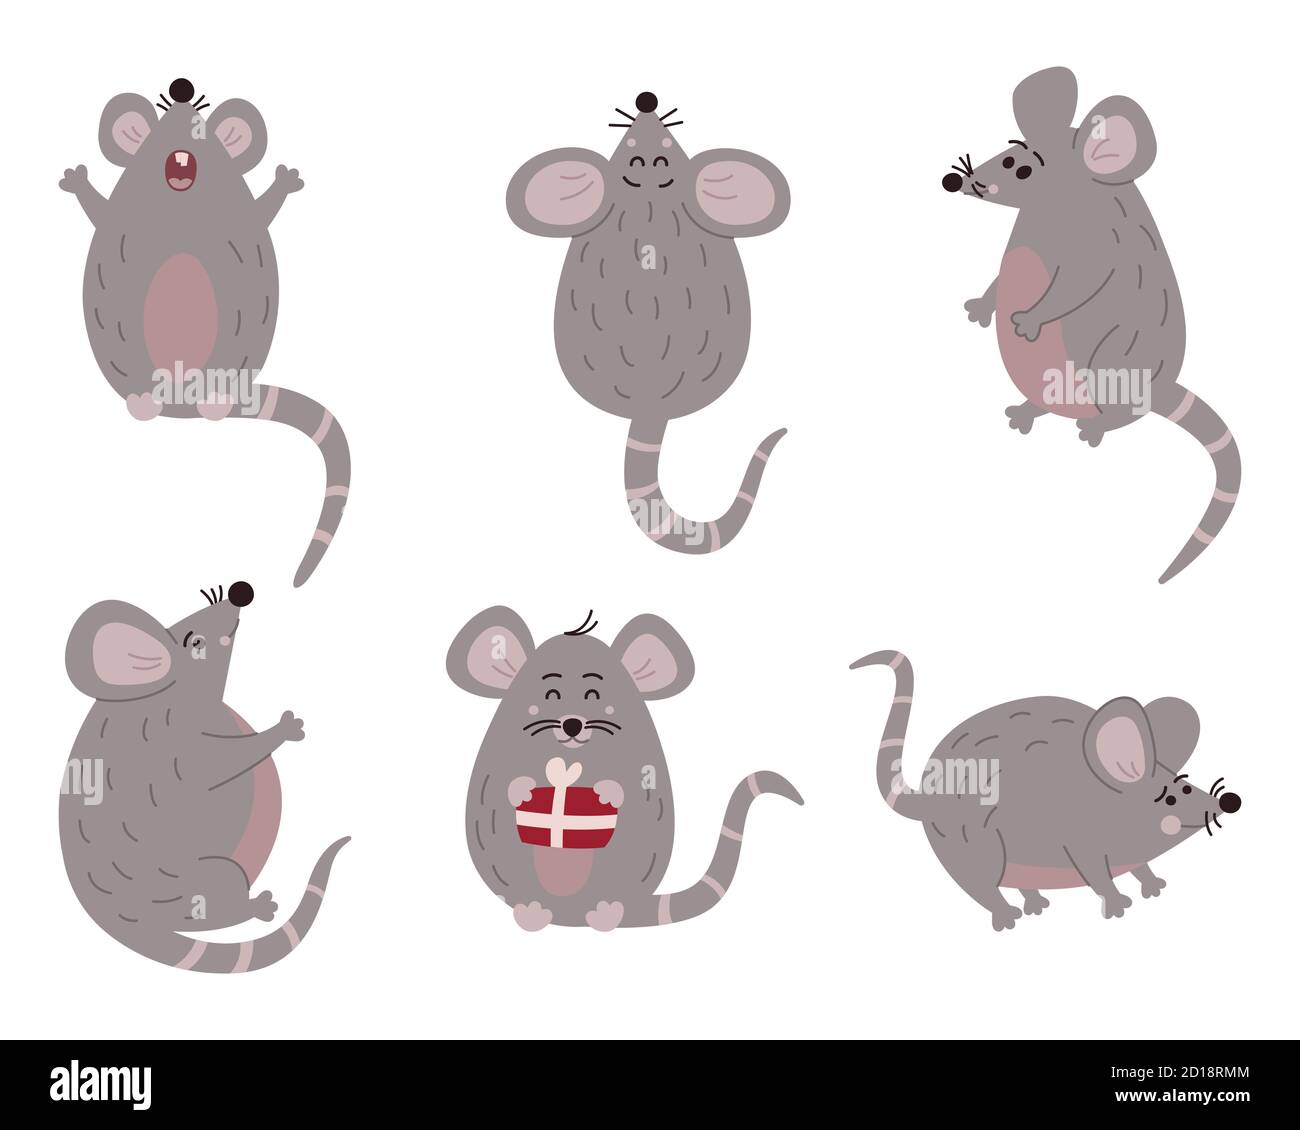 Lindo ratón en diferentes poses. Ilustración vectorial Foto de stock